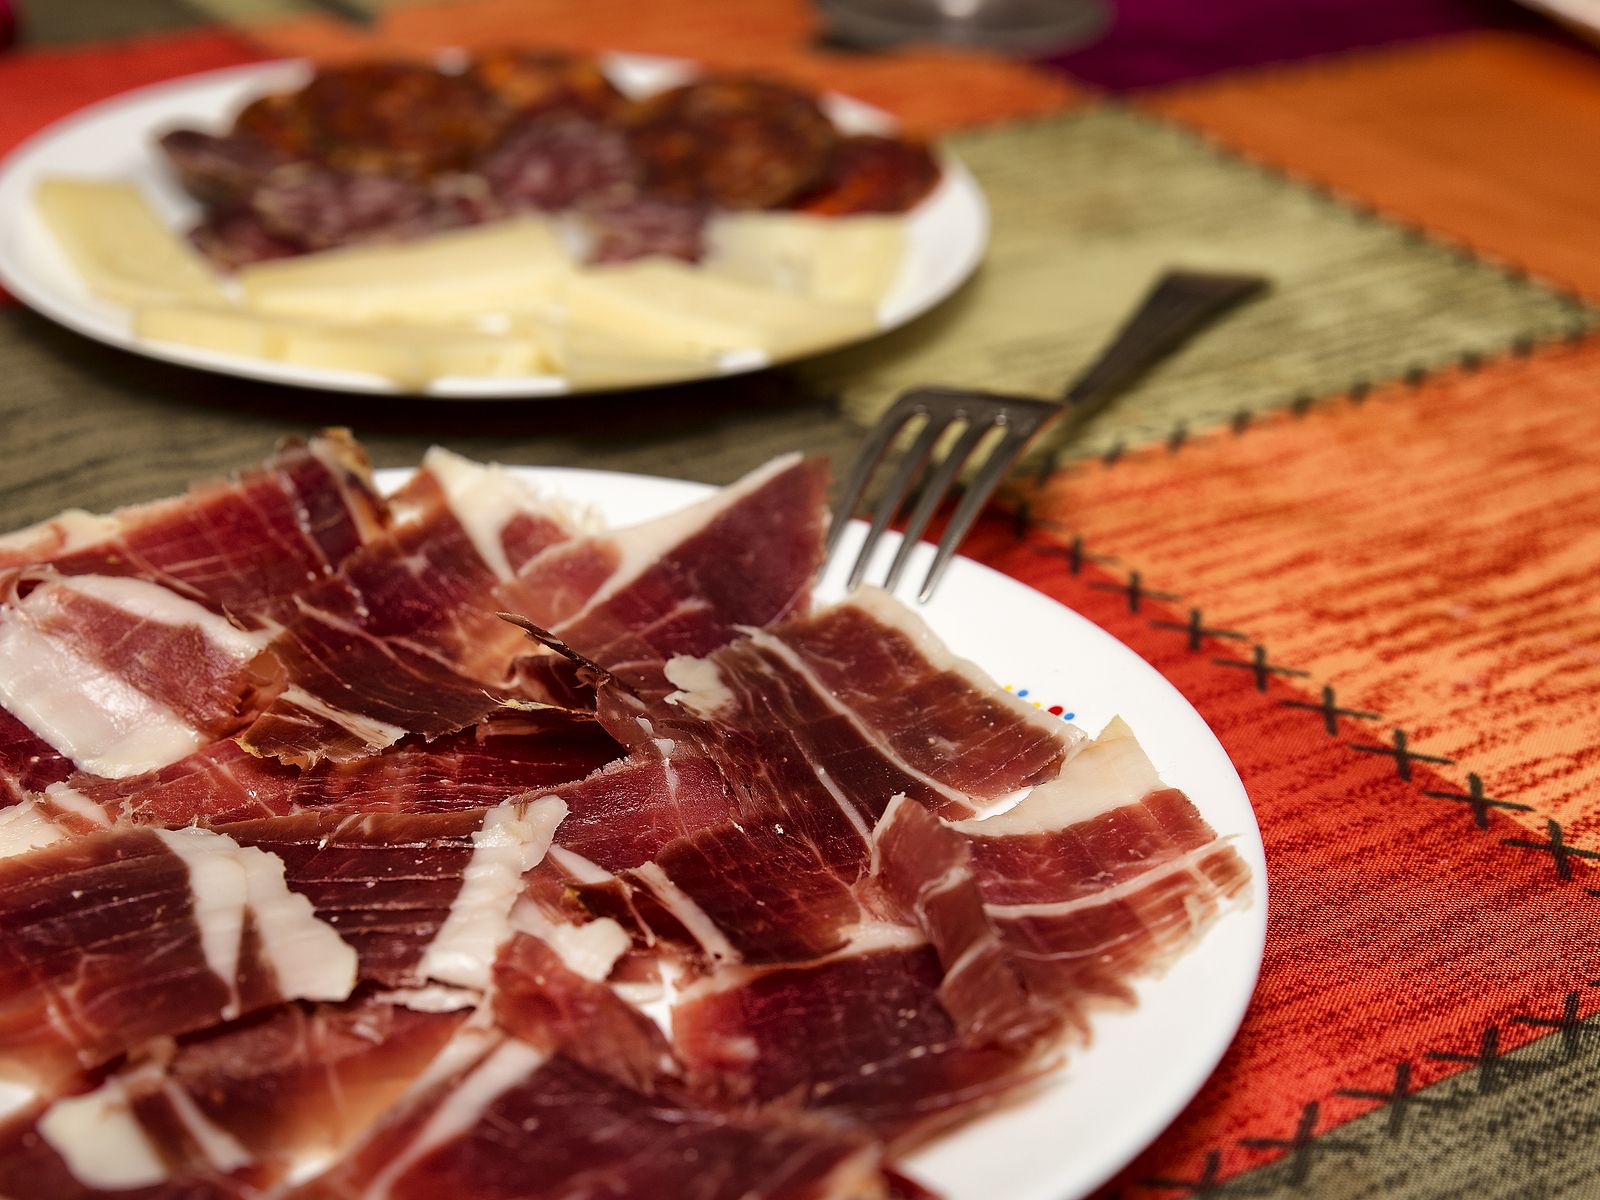 Nace 'SpainFoodNation', el programa para promocionar la gastronomía española por el mundo